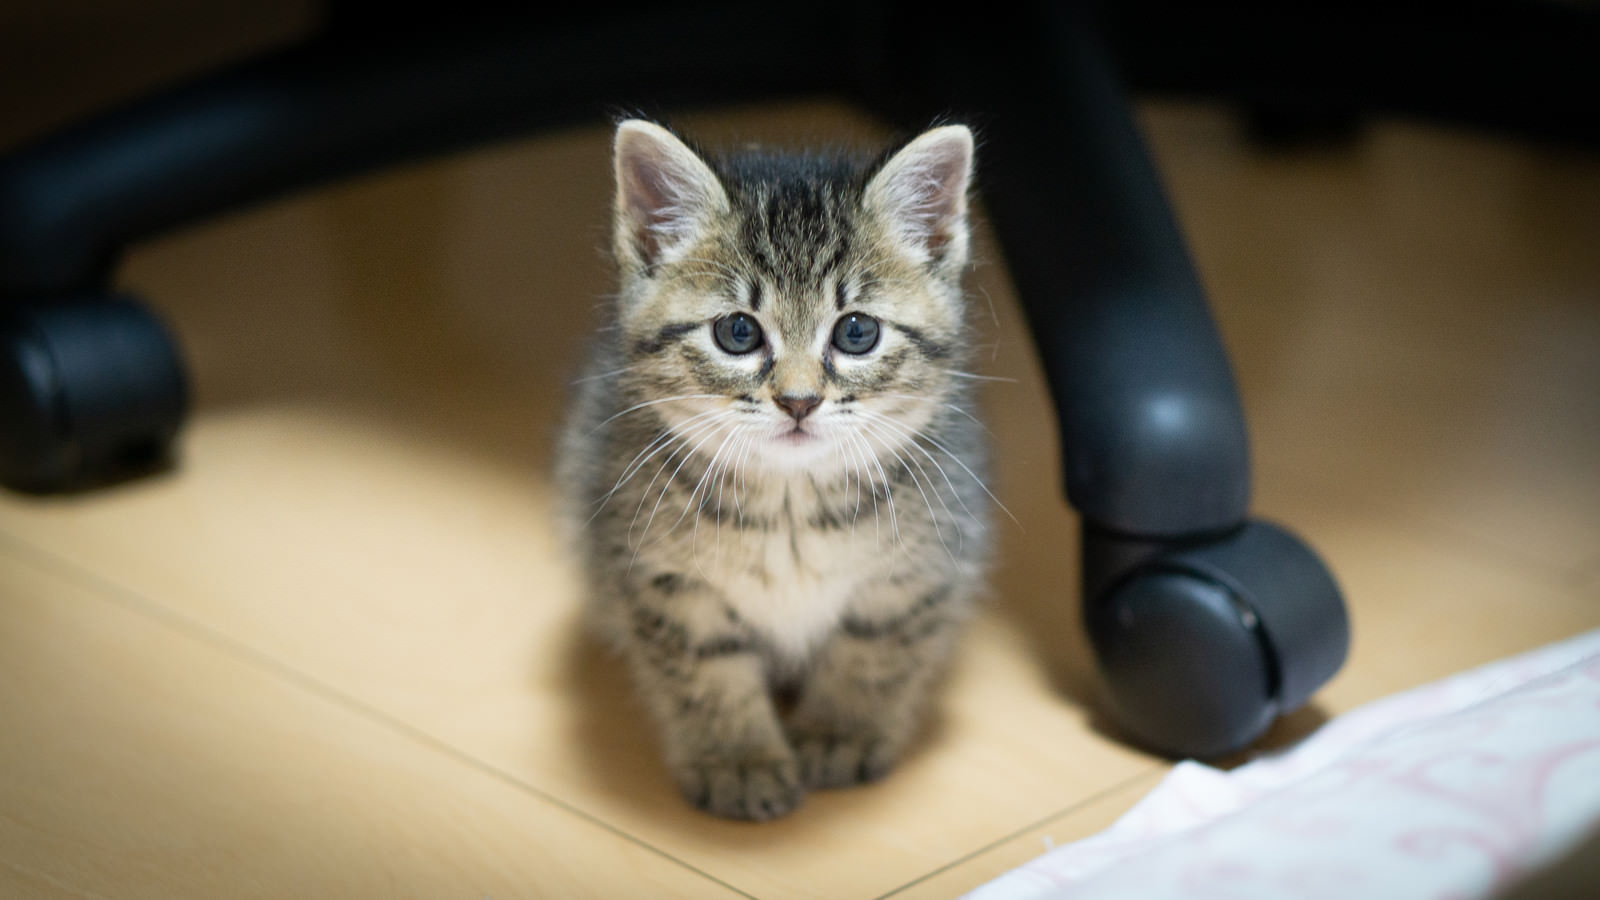 「デスクの下で寂しげな表情の子猫」の写真